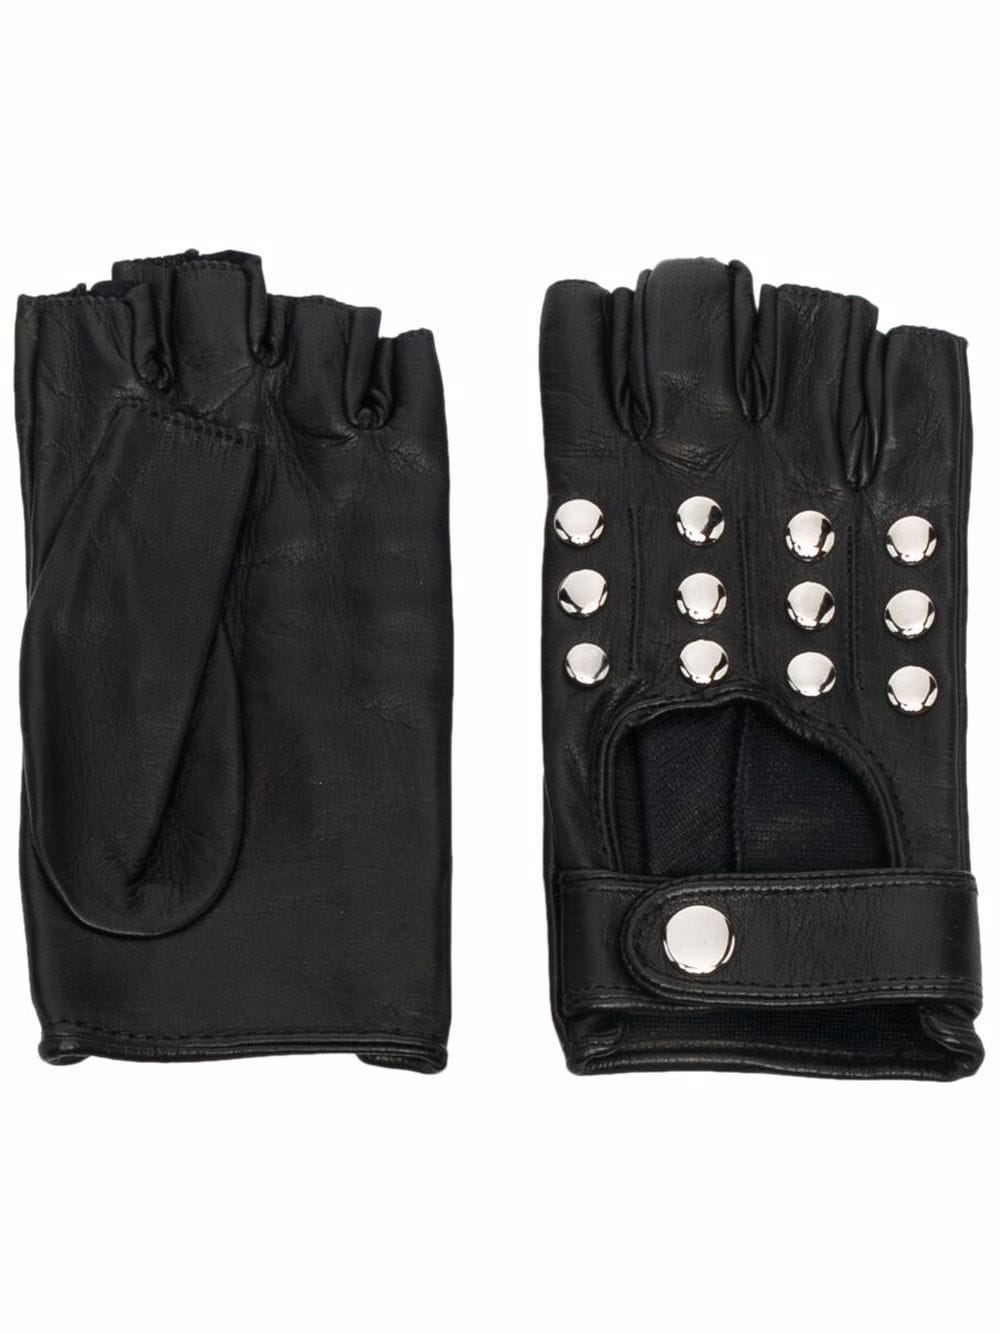 Manokhi silver-studded leather gloves - Black von Manokhi